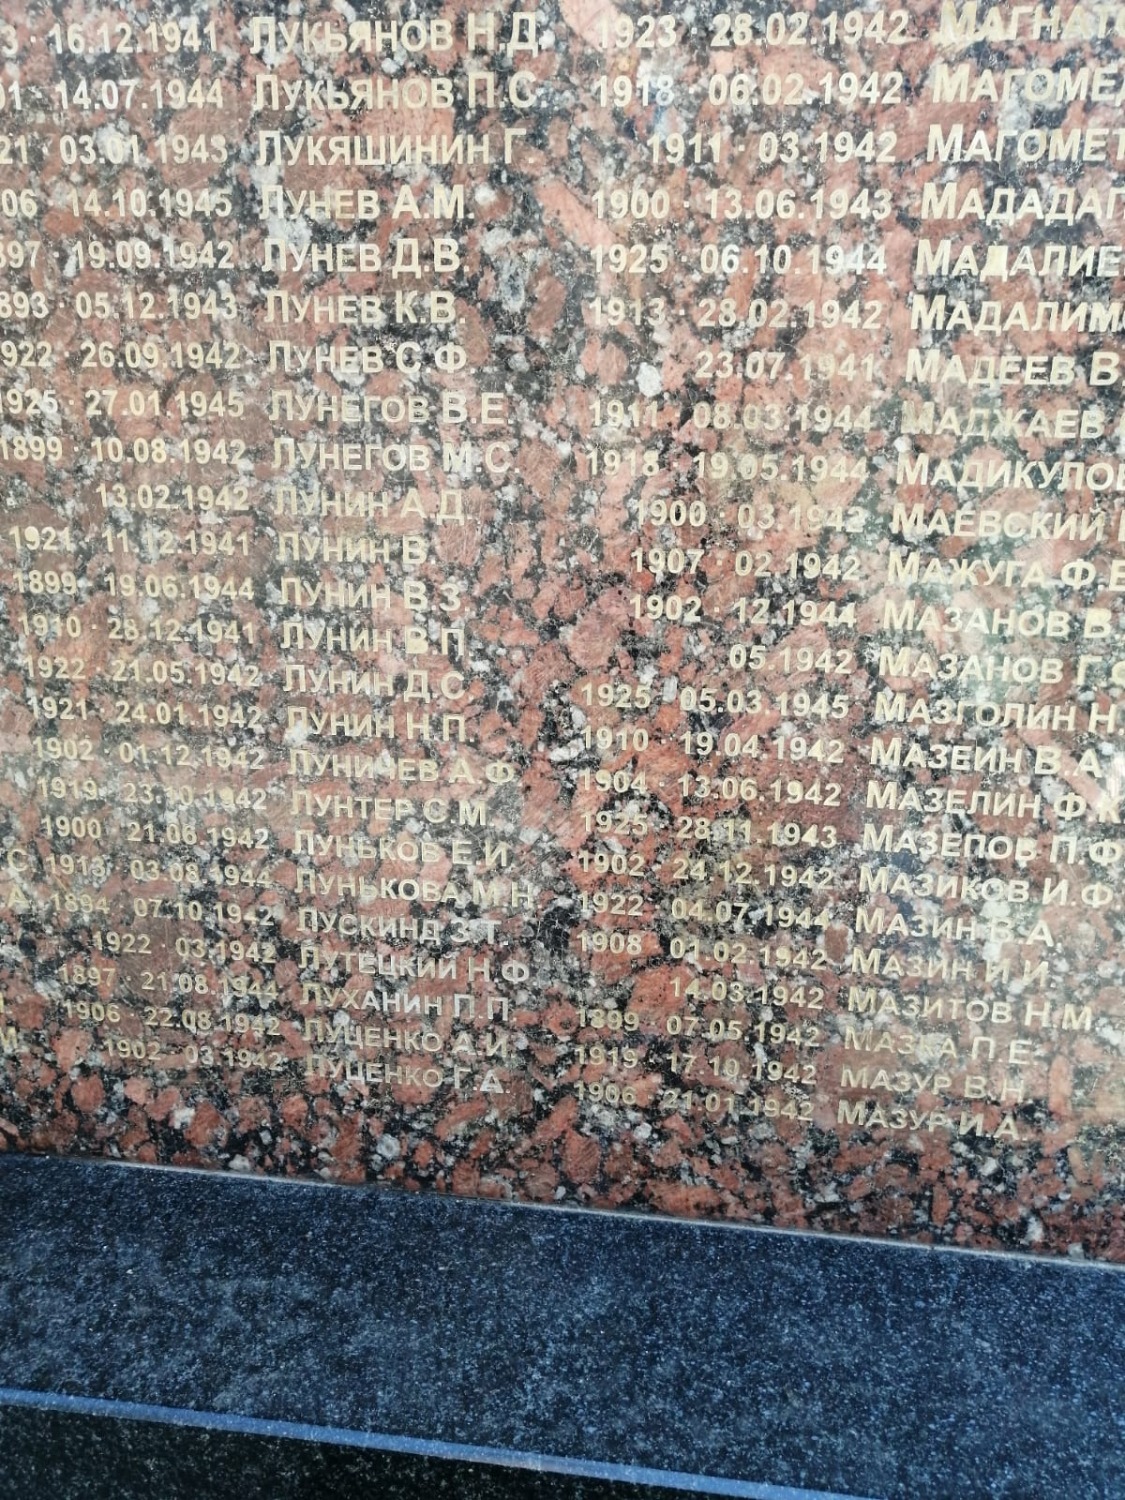 Братская могила на Донском кладбище Москвы. Фамилия летчика Б.Е. Лурье — отсутствует в общем списке фамилий 